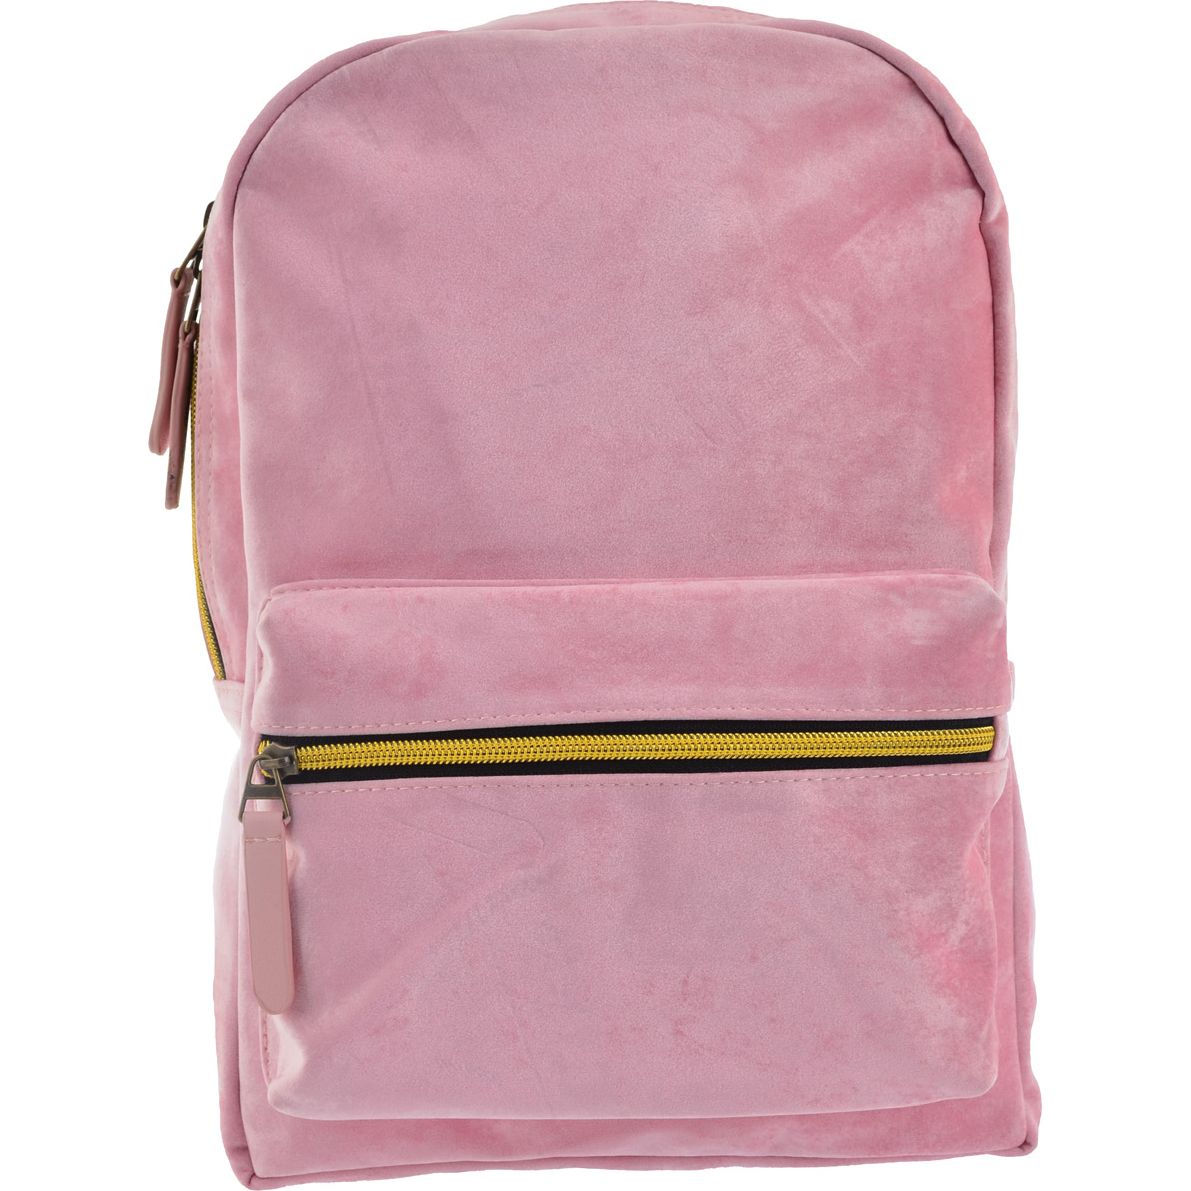 Рюкзак жіночий Yes YW-21 Velour Marlin, розовый (556900) - фото 1